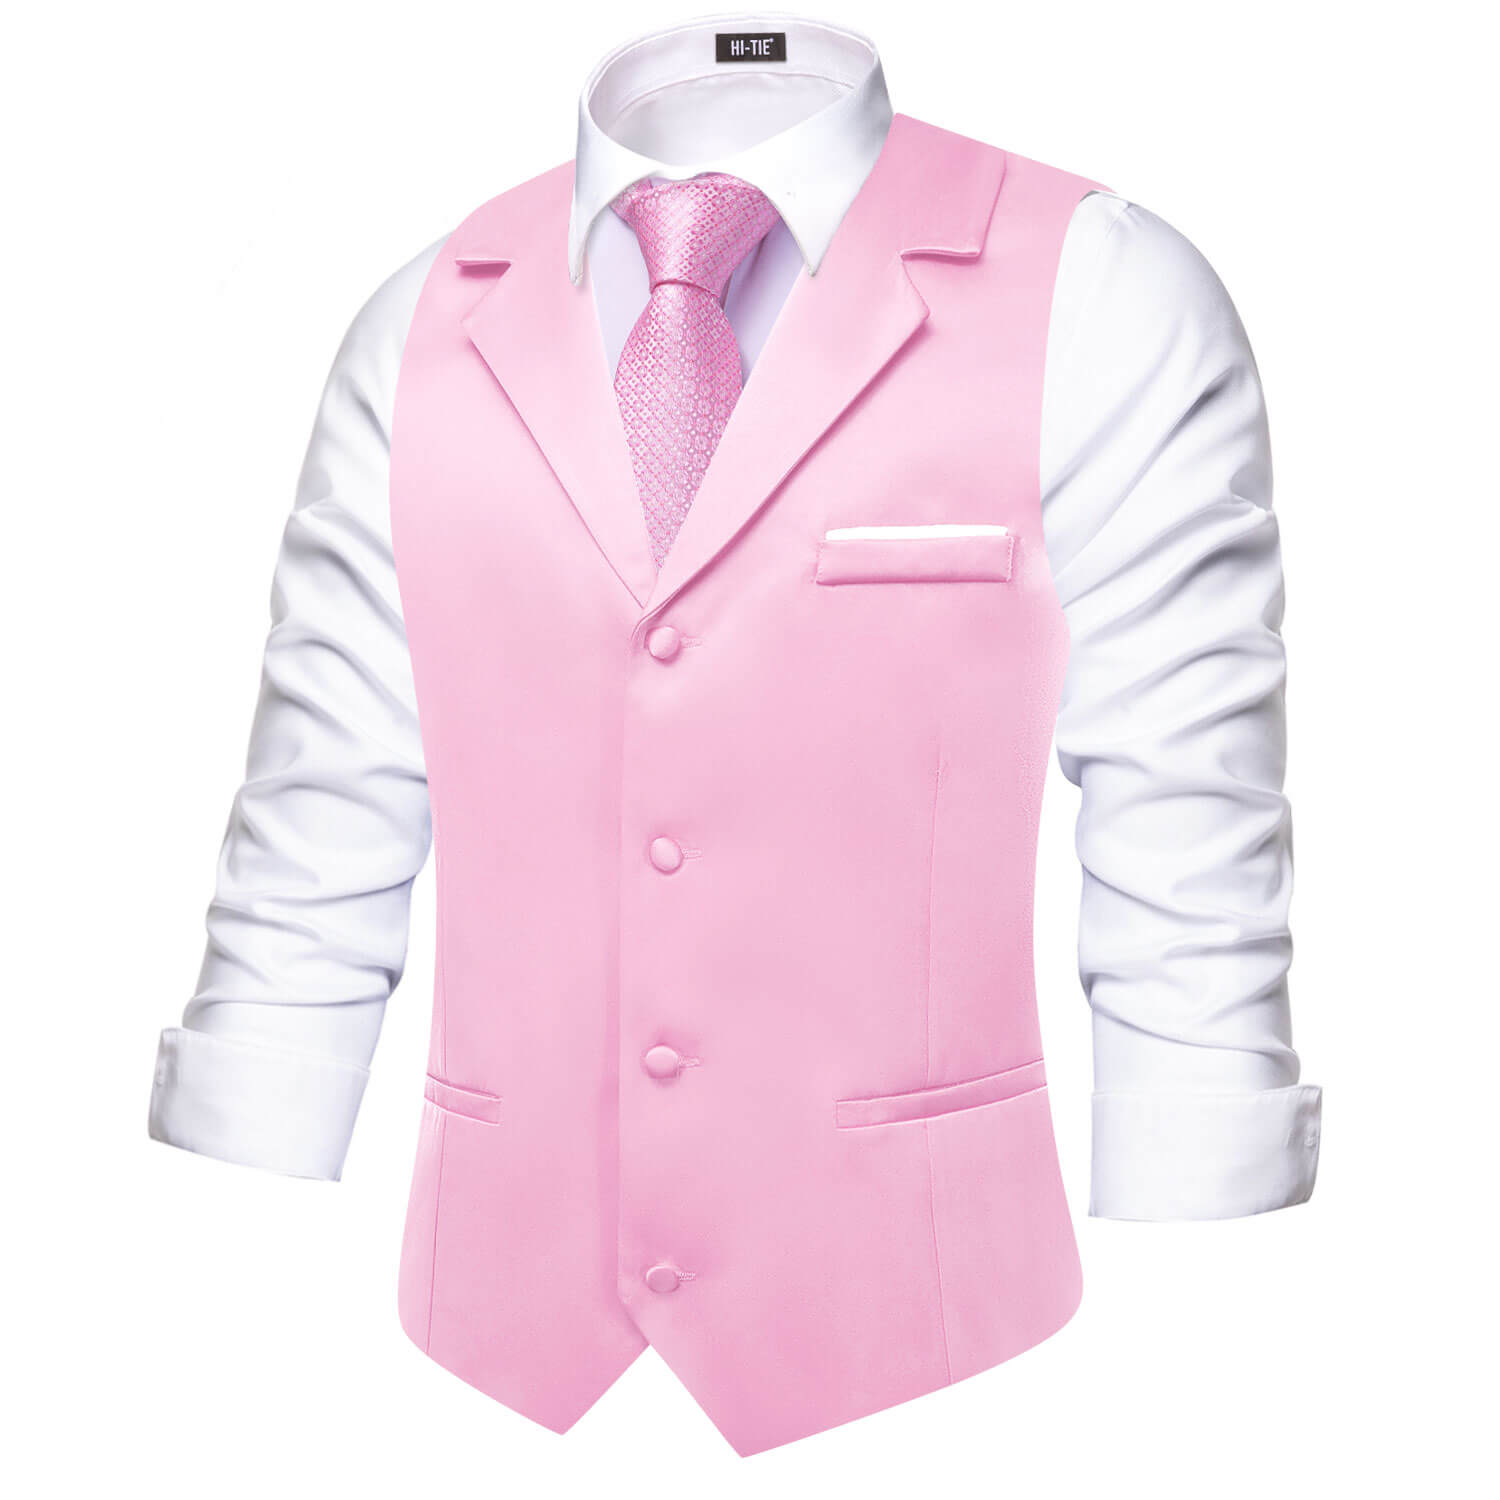 Hi-Tie Baby Pink Waistcoat Solid Notch lapels Men's Vest